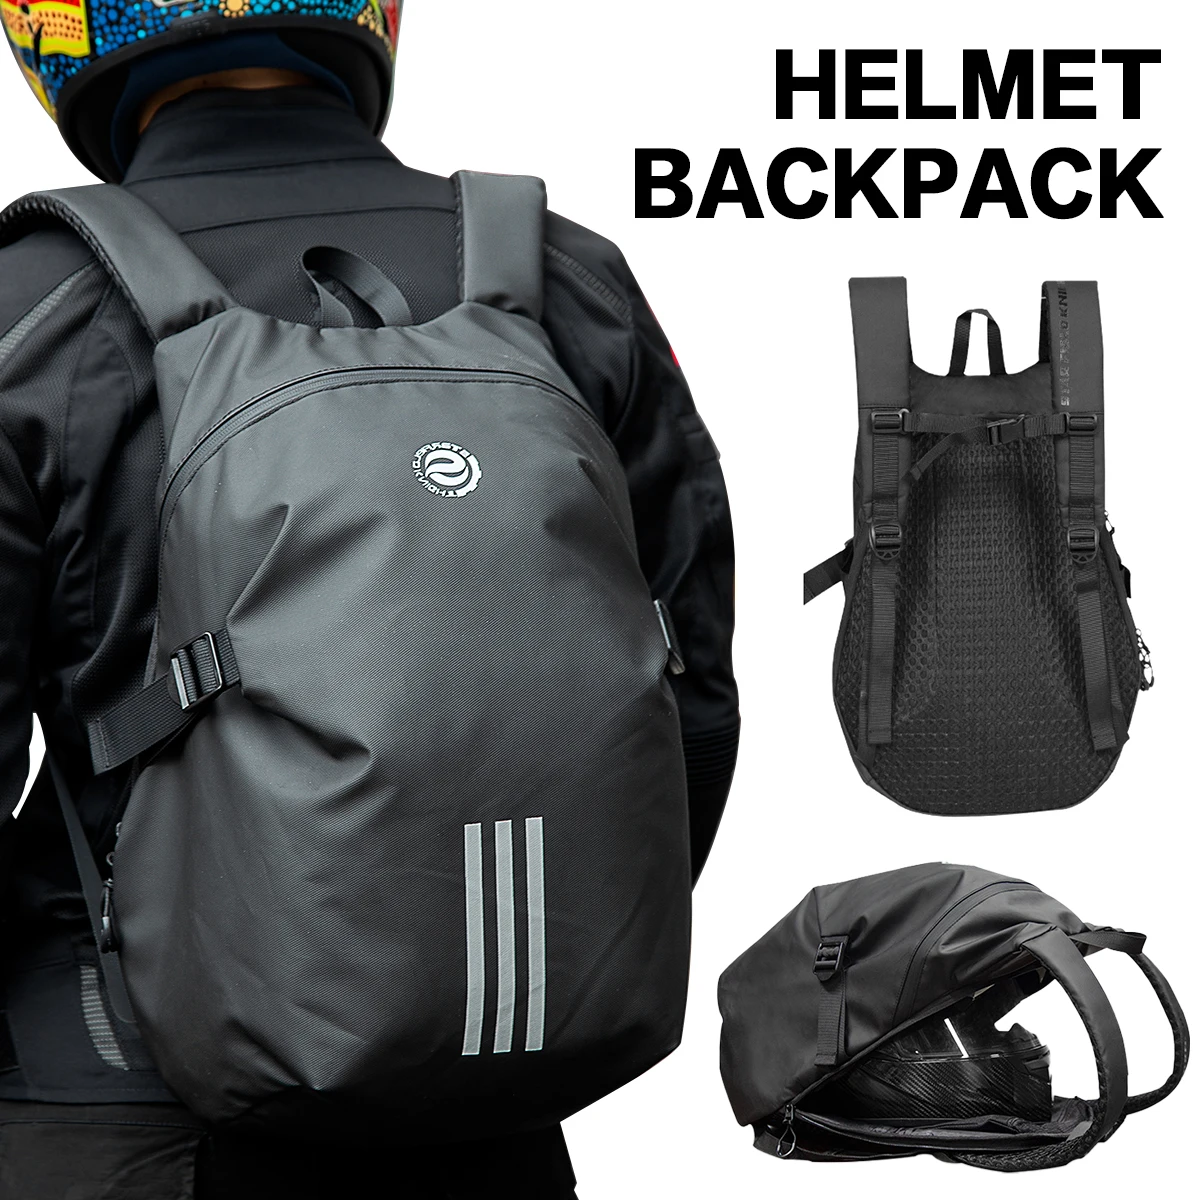 Motorcycle Helmet Backpack Waterproof Motorcycle Bag Motorbike Luggage Suitcase Travel Bag School Bag Large Motorcycle Accessory